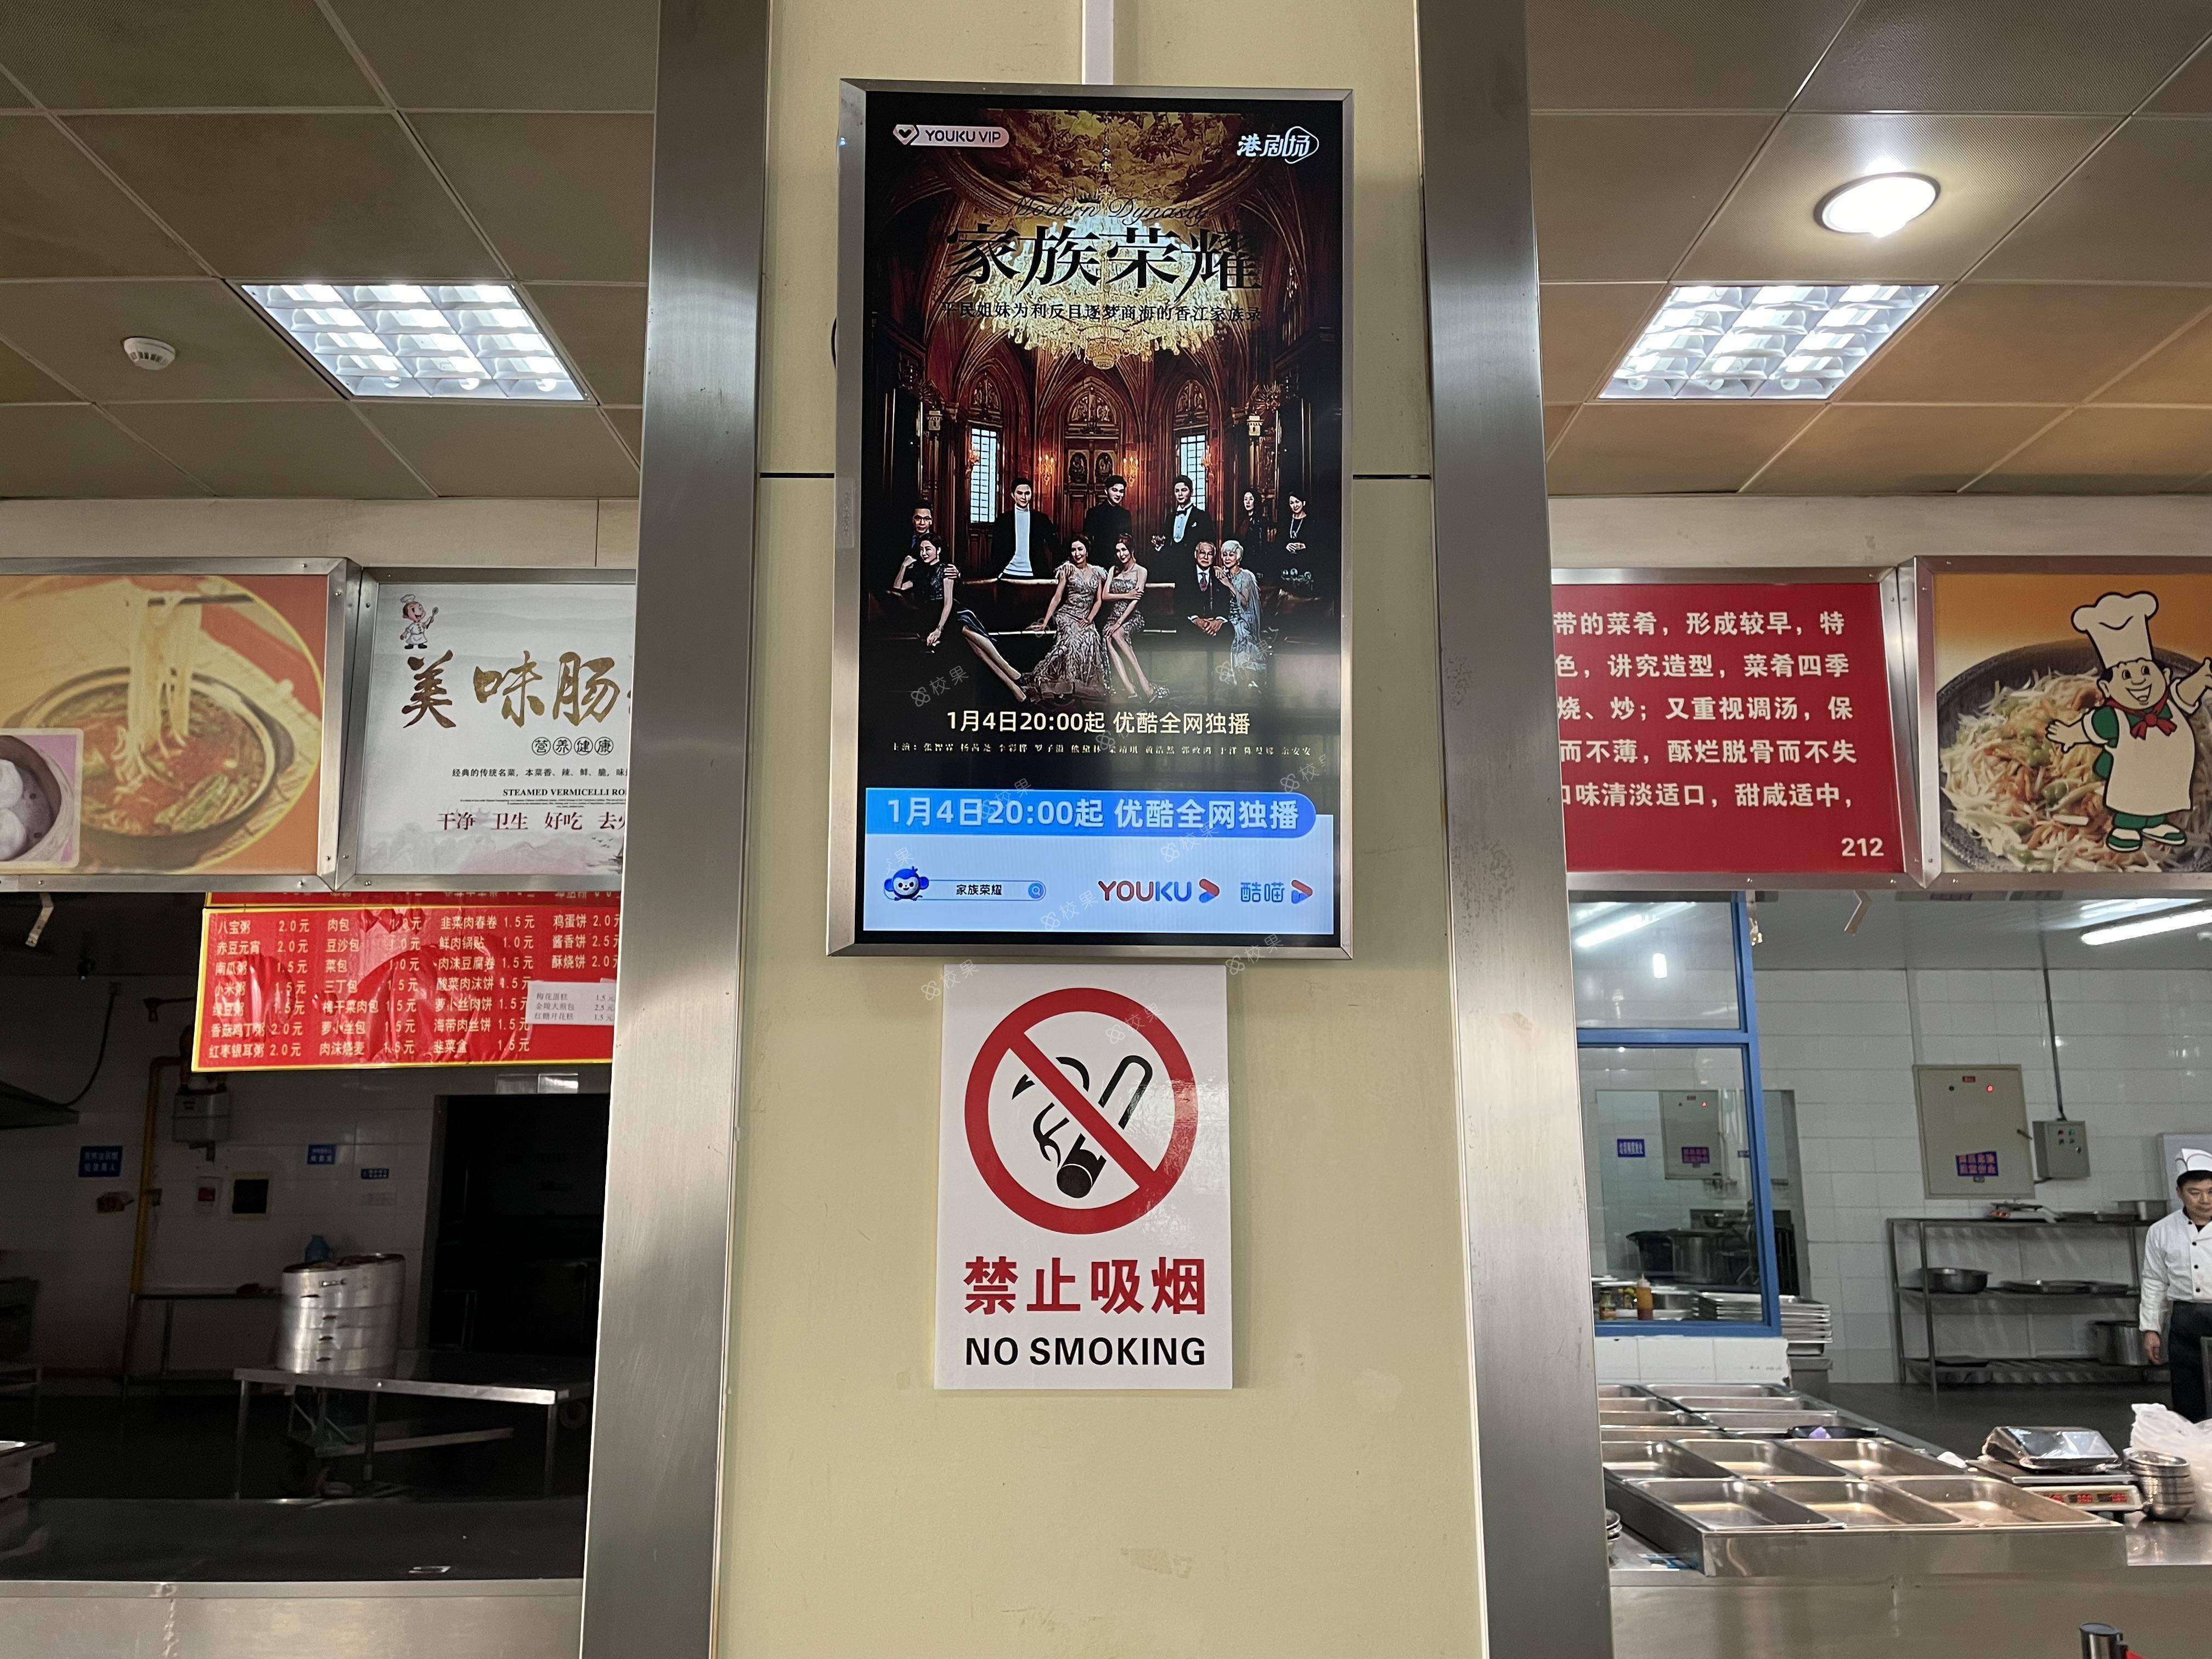 液晶屏广告 北京航空航天大学